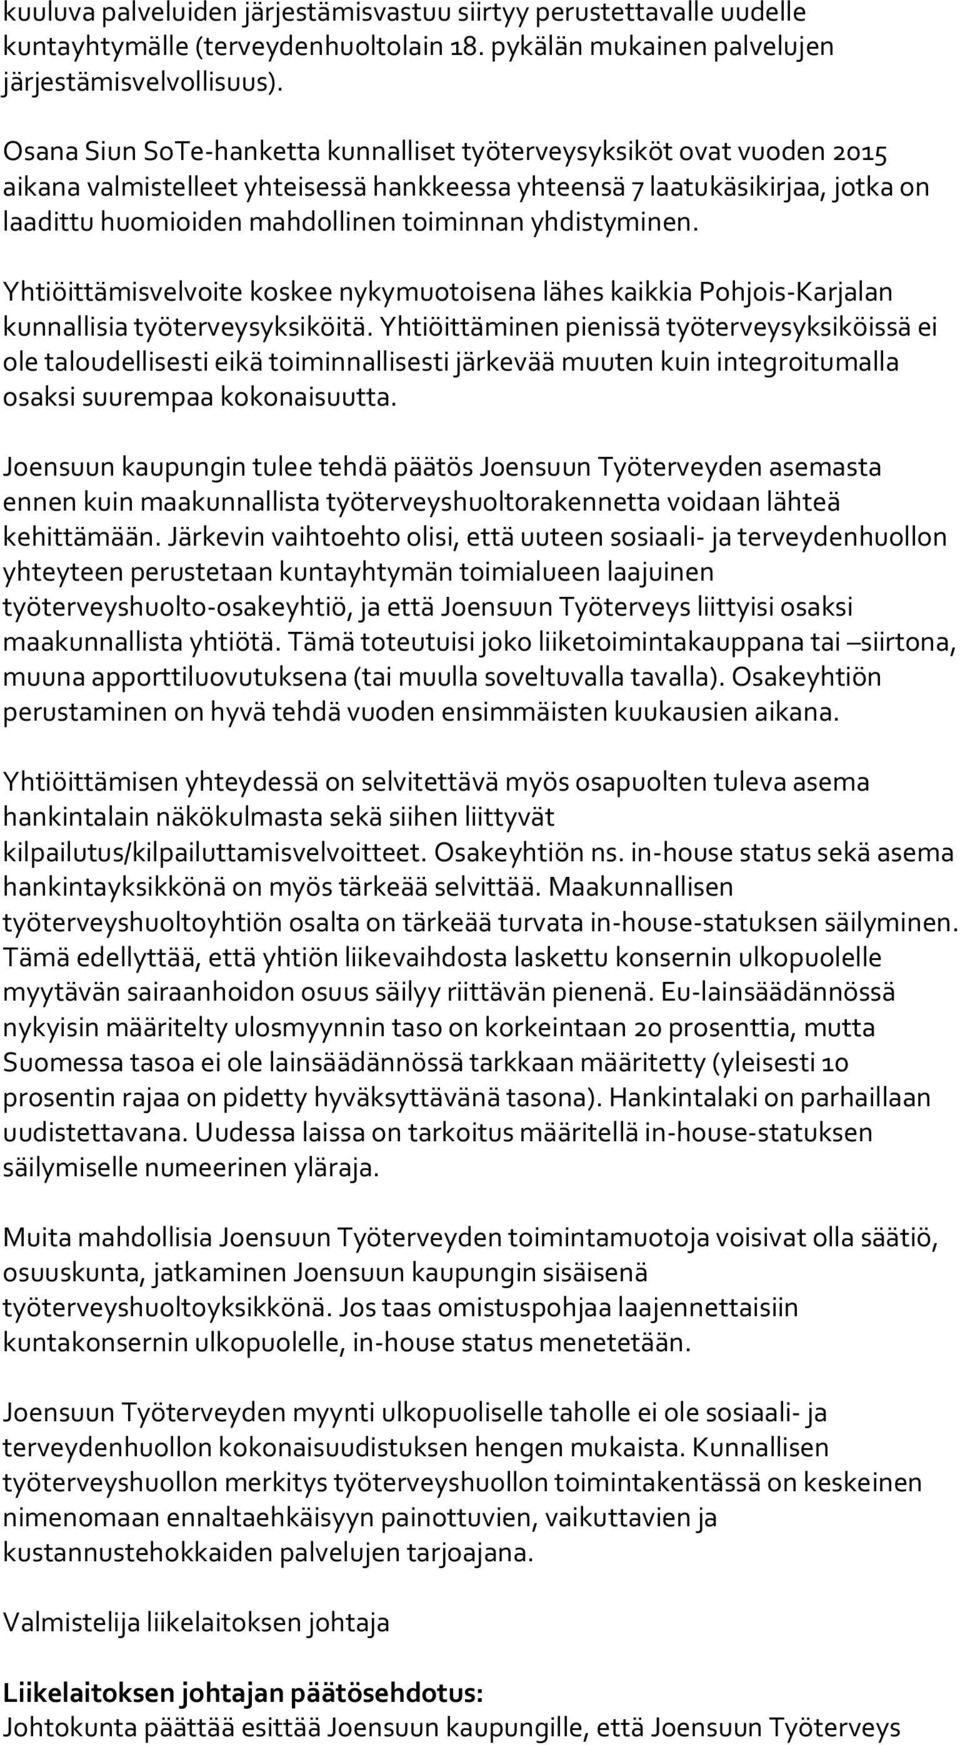 yhdistyminen. Yhtiöittämisvelvoite koskee nykymuotoisena lähes kaikkia Pohjois-Karjalan kunnallisia työterveysyksiköitä.